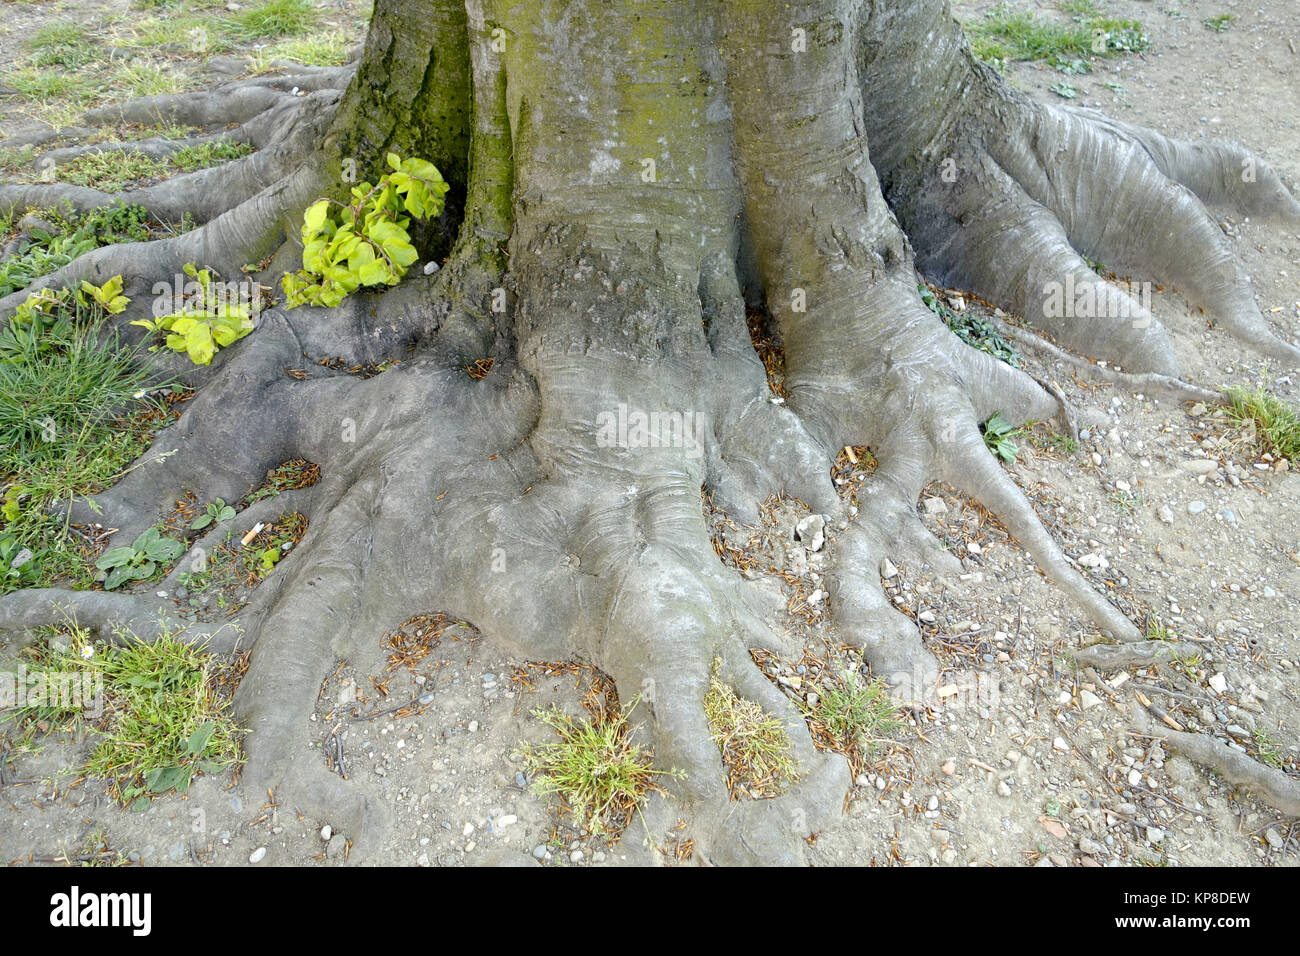 Deciduous tree roots Stock Photo